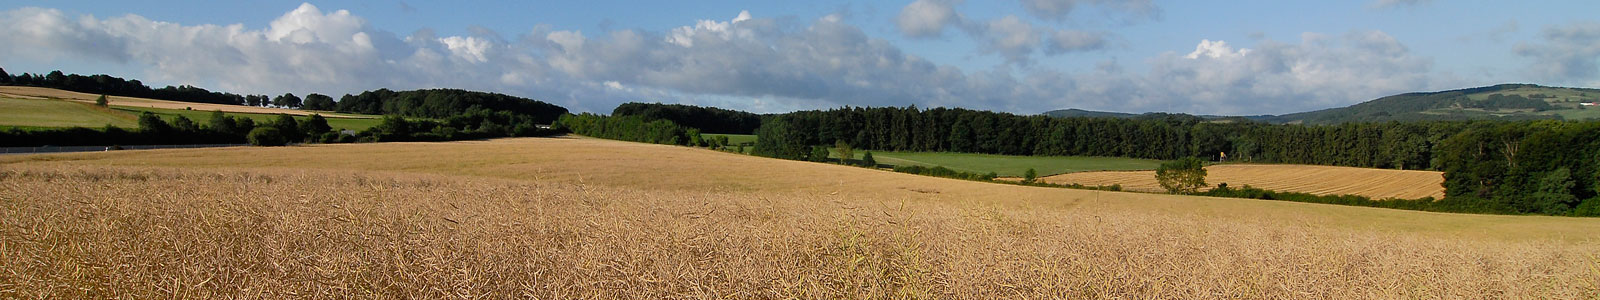 Reifes Getreidefeld mit Wald im Hintergrund ©DLR